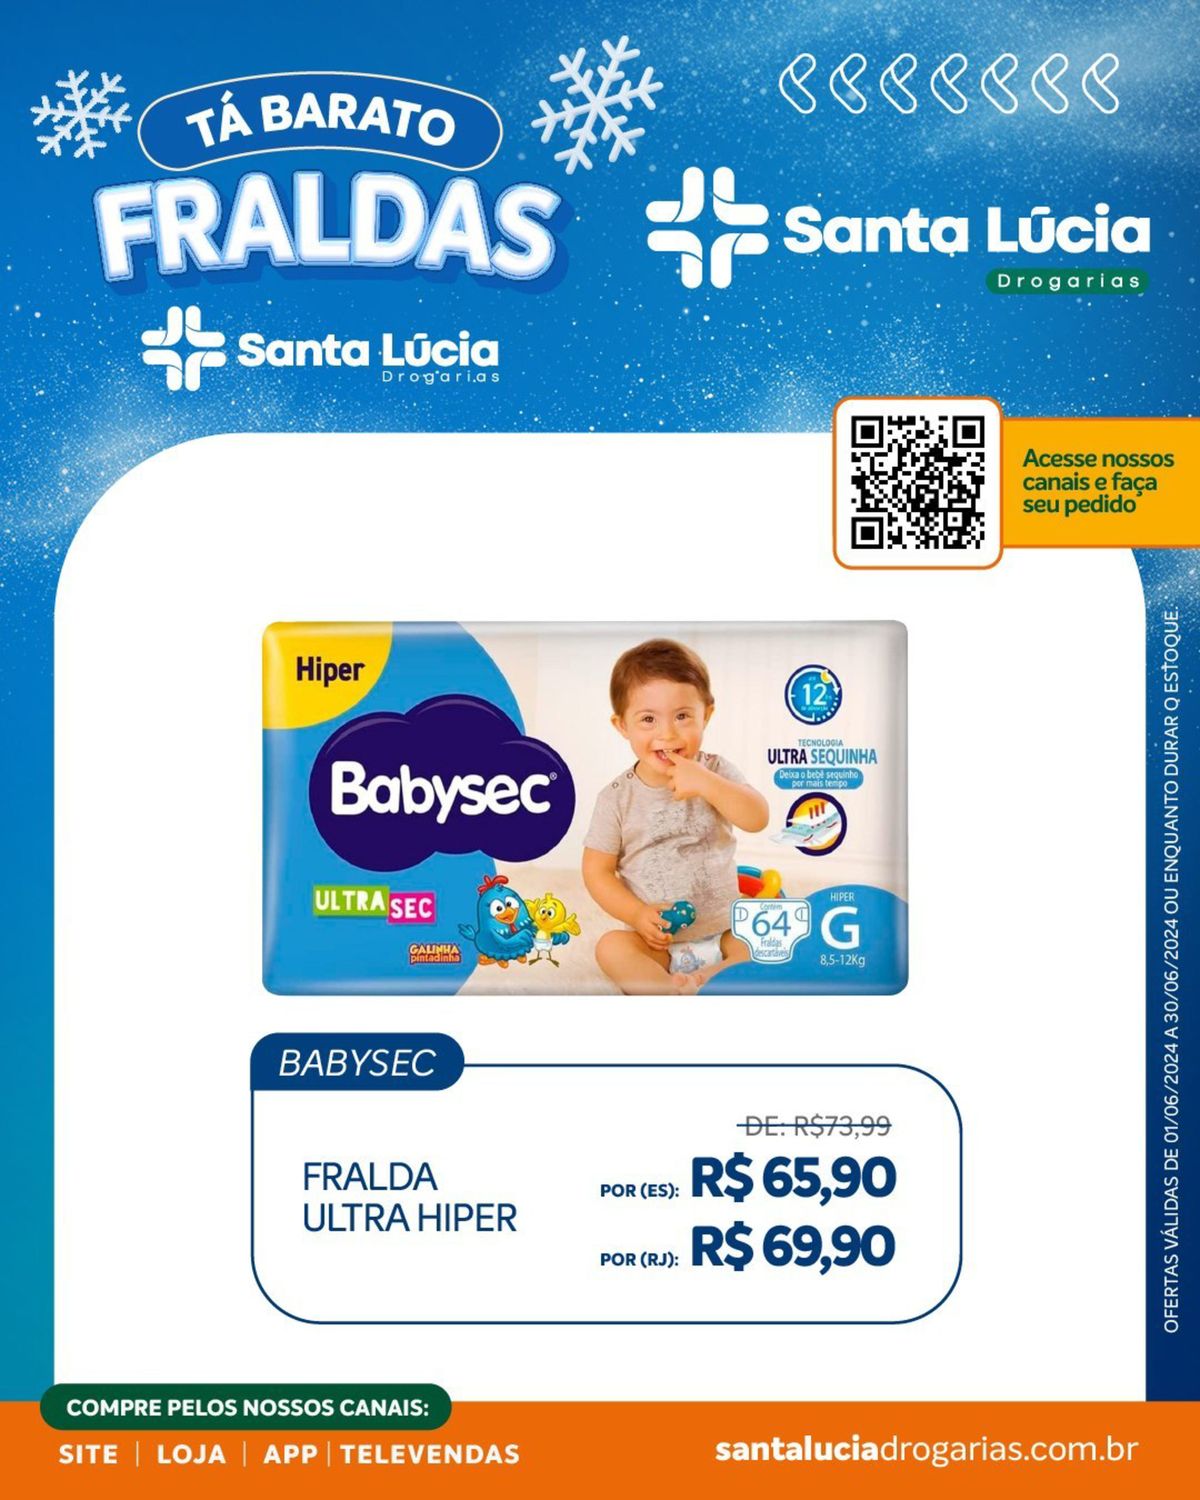 Fraldas BABYSEC em promoção na Farmácia Santa Lúcia!